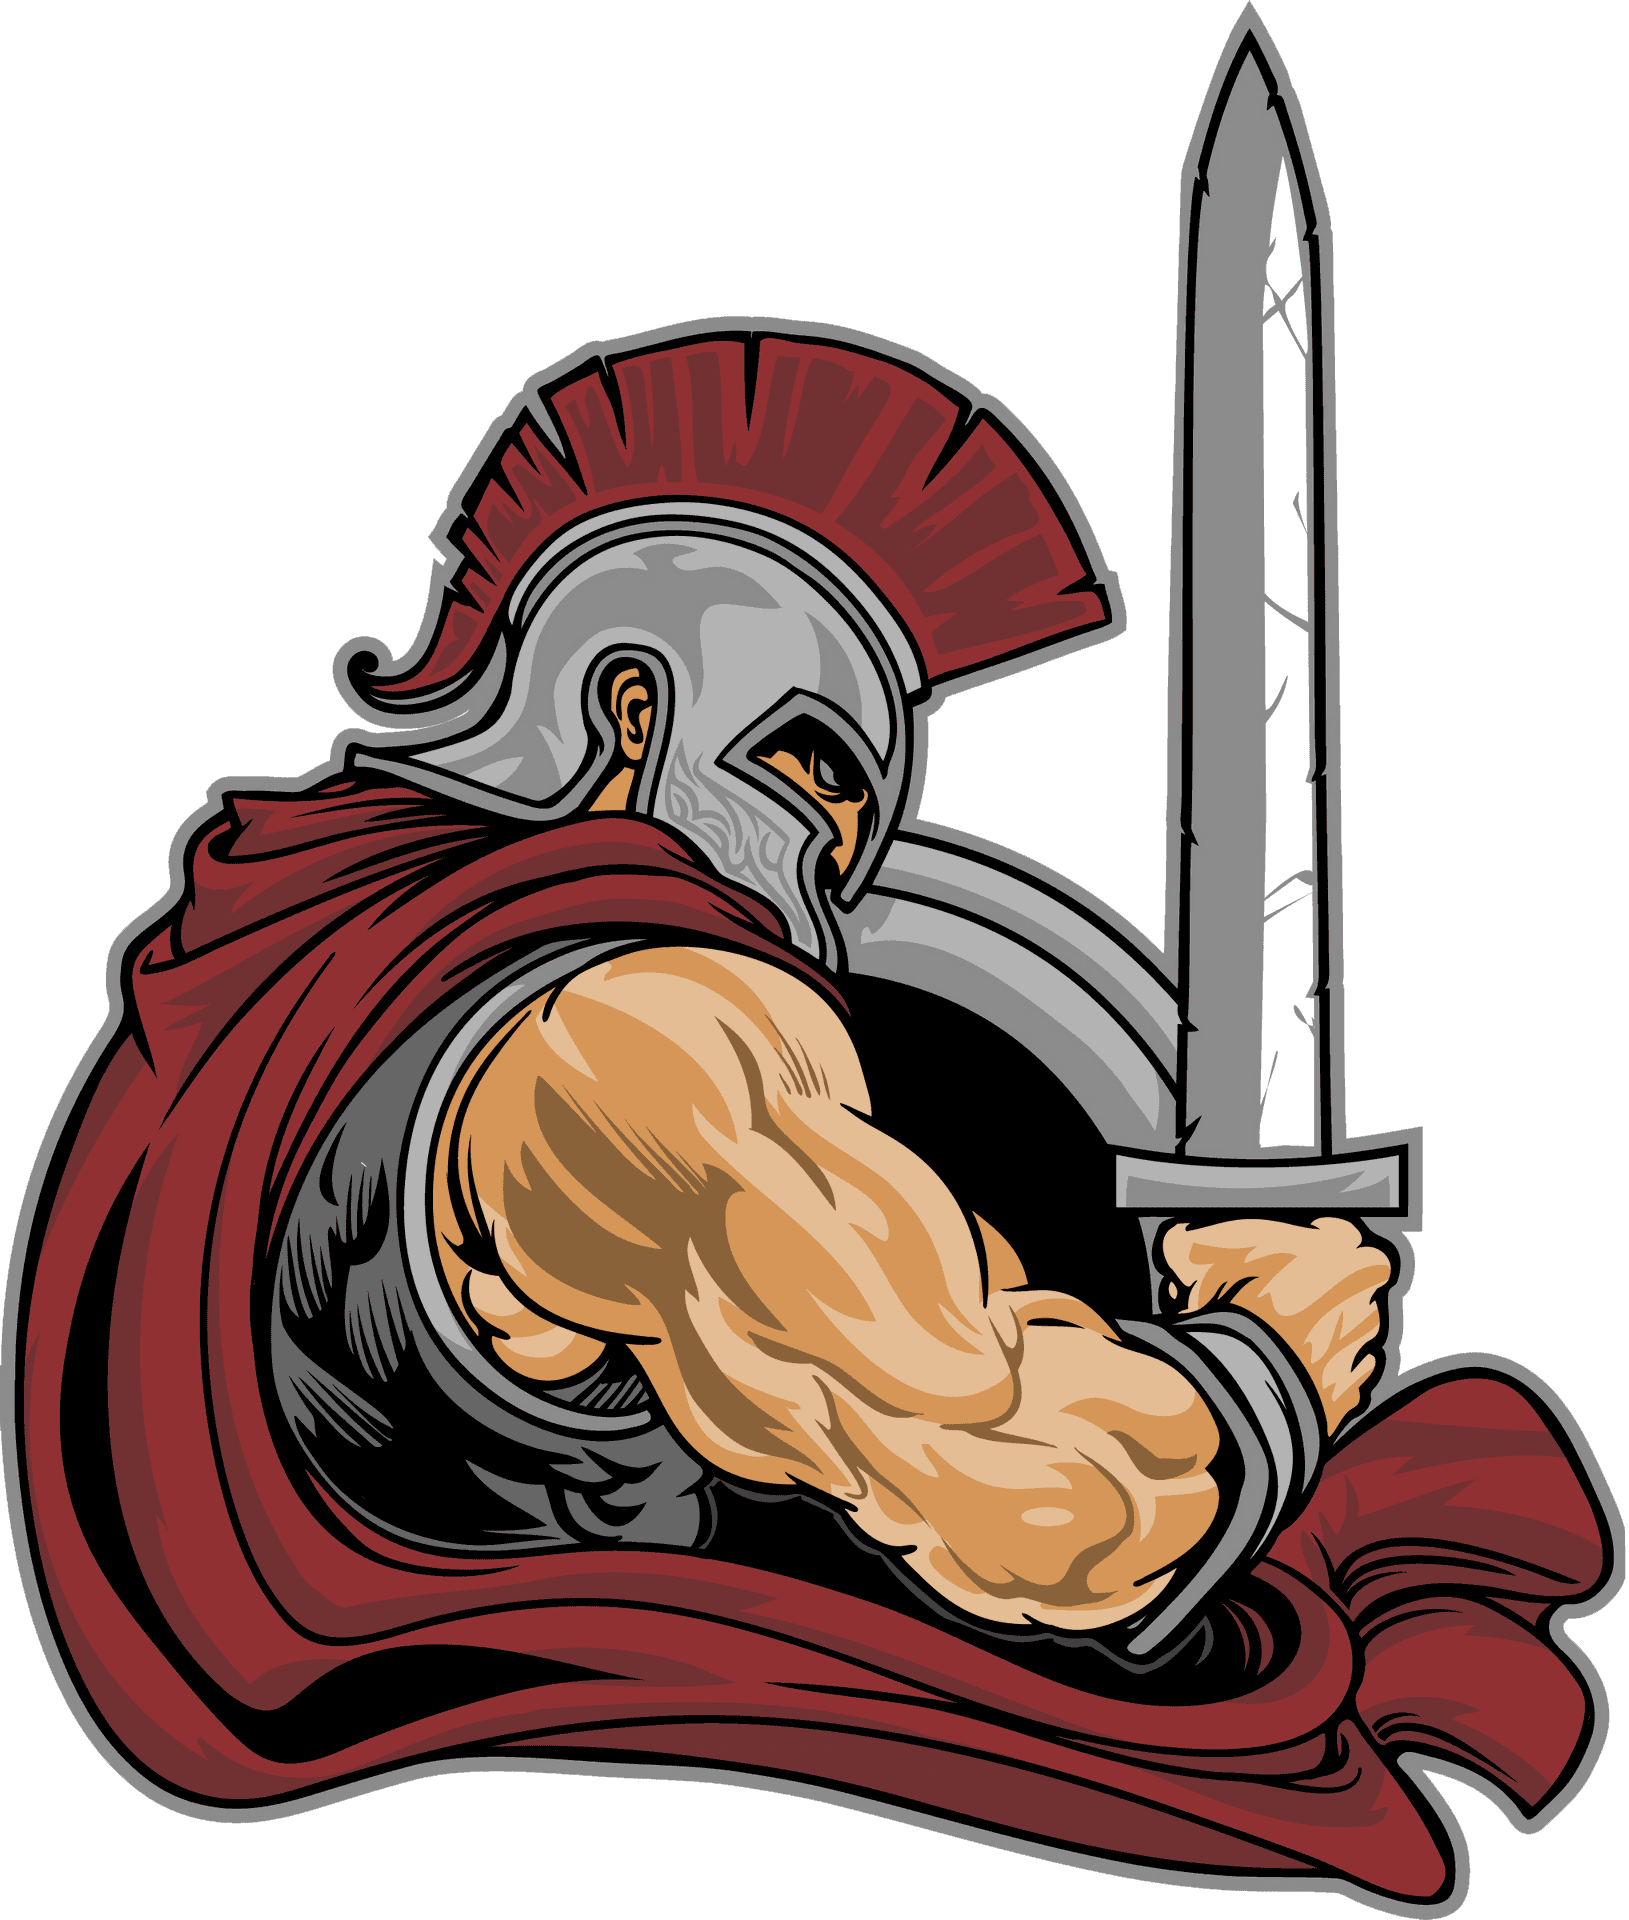 Spartan Warrior Illustration PNG